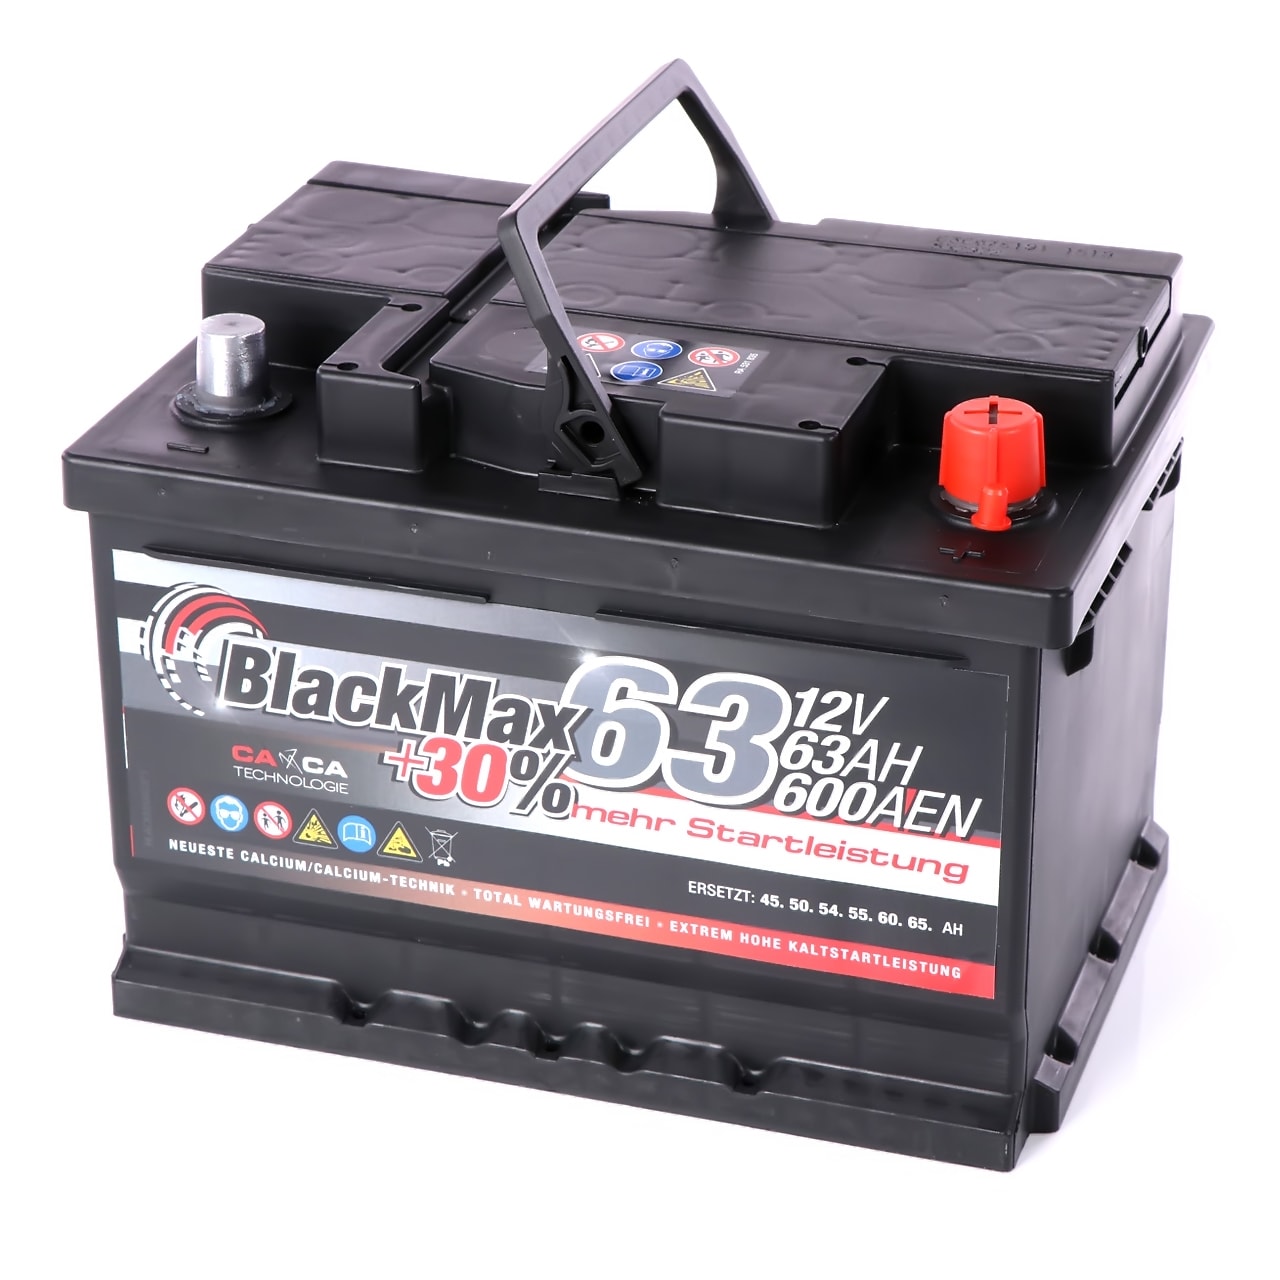 BlackMax +30% 12V 63Ah 600A/EN